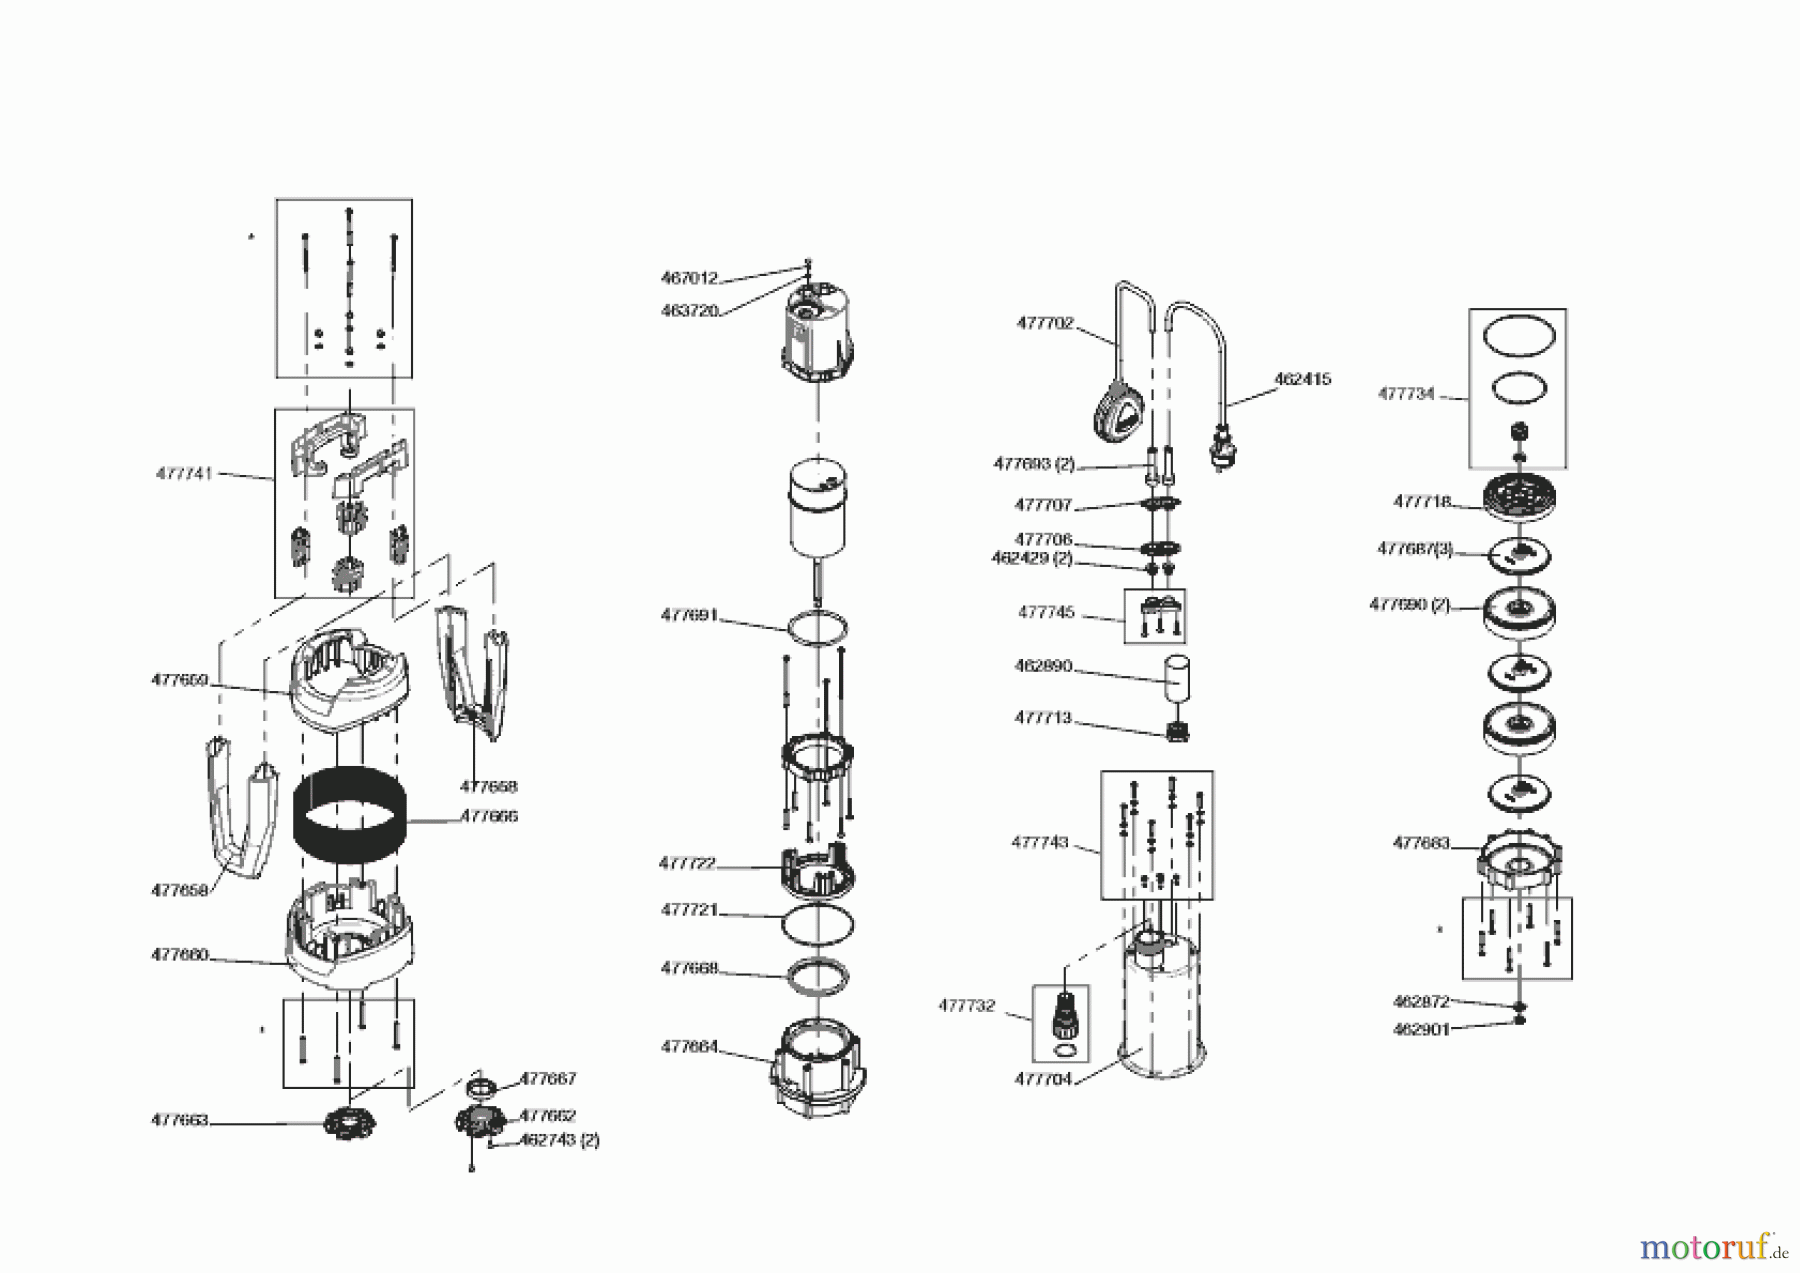  AL-KO Wassertechnik Tauchdruckpumpen Dive 6500/34  05/2021 Seite 1